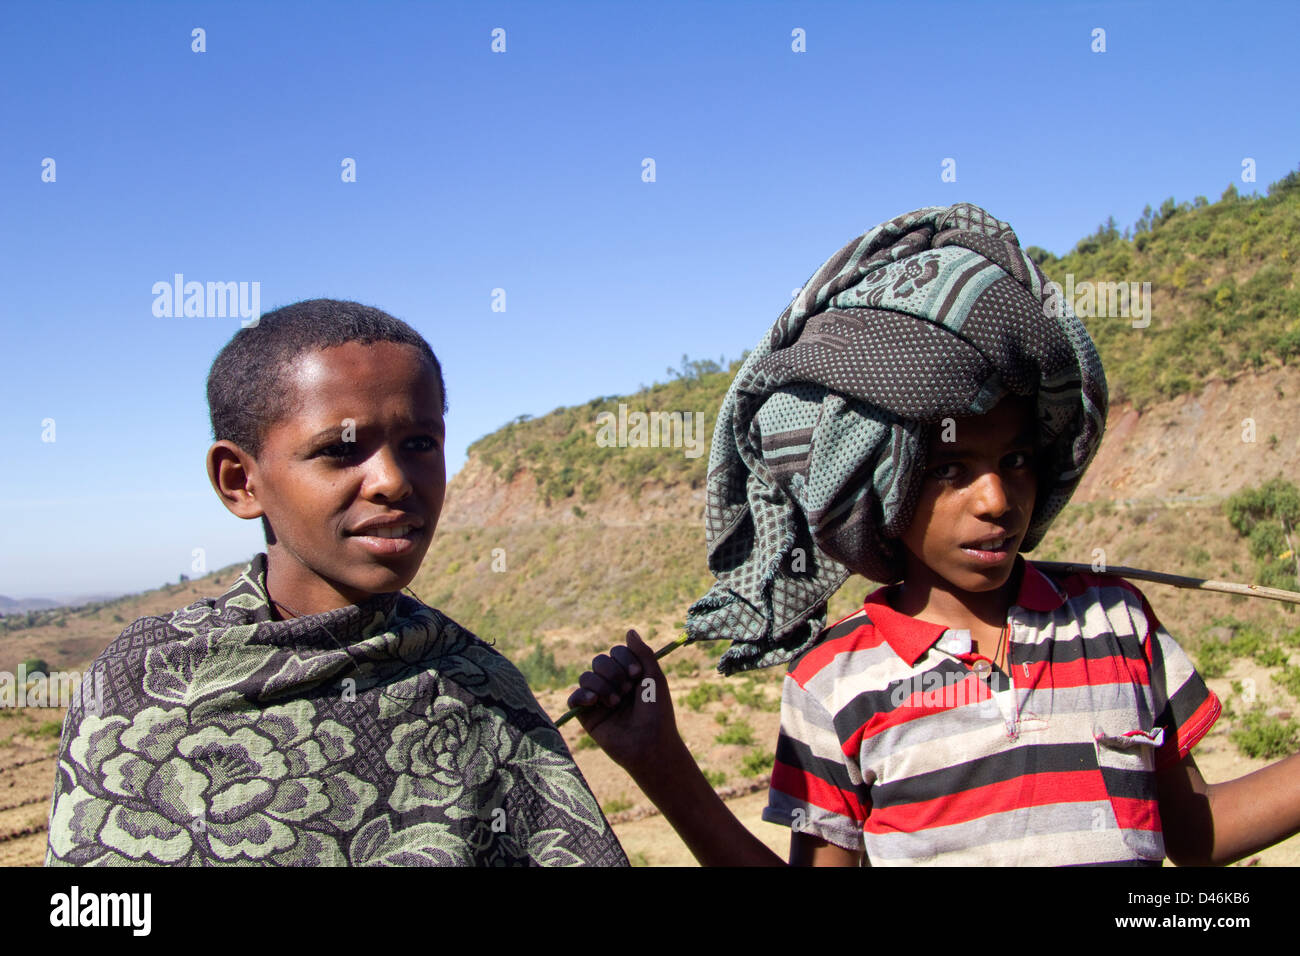 Les garçons de l'Éthiopie, le nord de l'Éthiopie, l'Afrique Banque D'Images